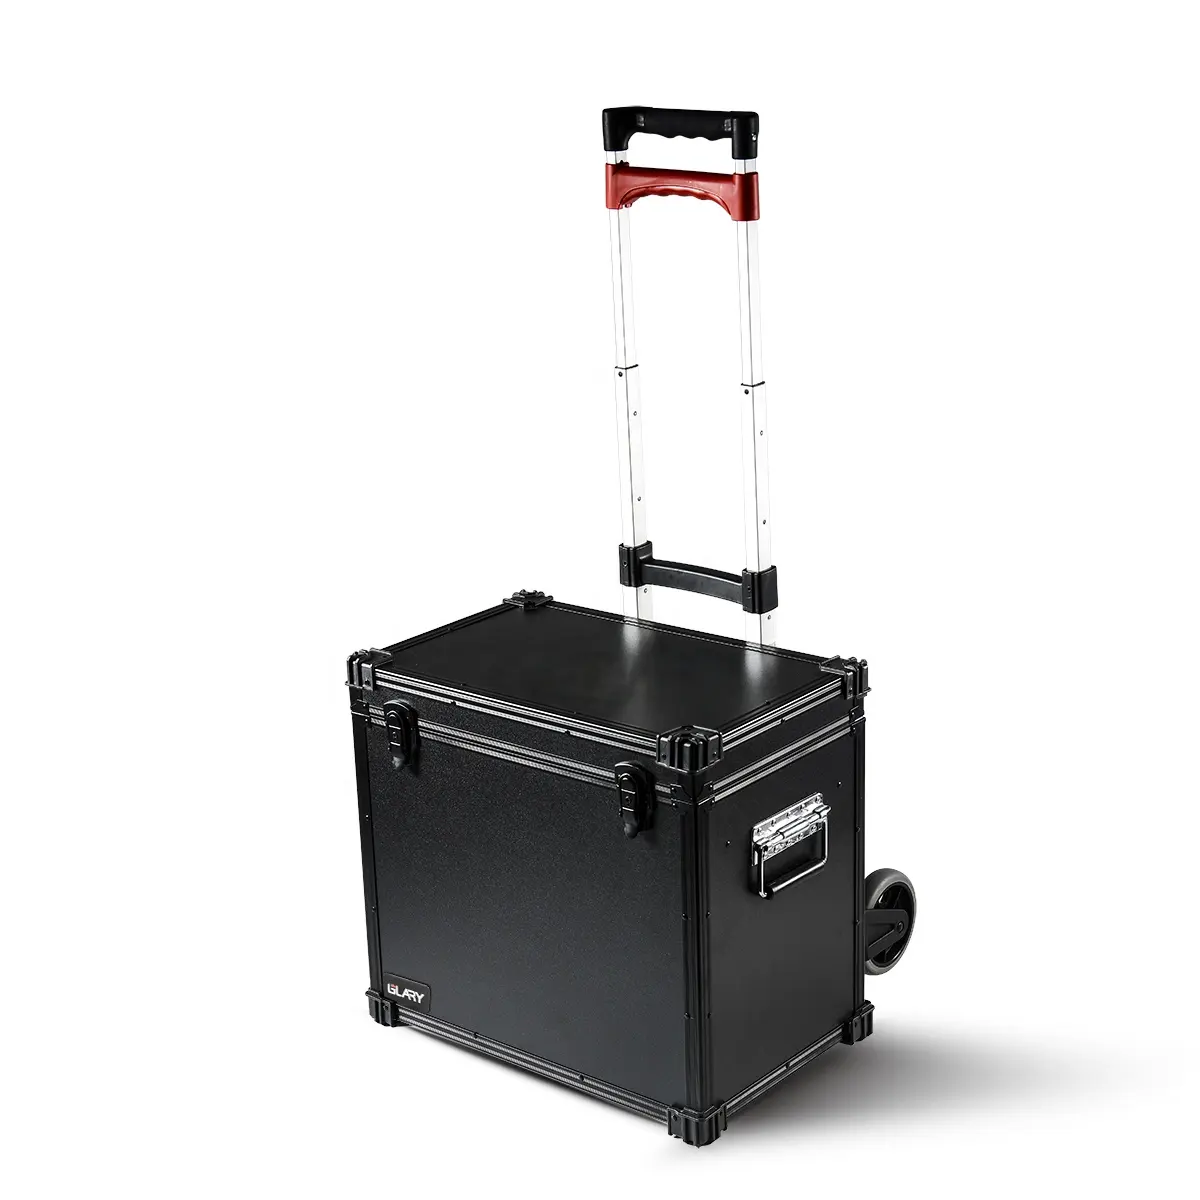 GLARY Hartaluminium-Roll werkzeug koffer Reise werkzeug koffer mit Rädern mit Organizer-Koffer-Werkzeug kasten